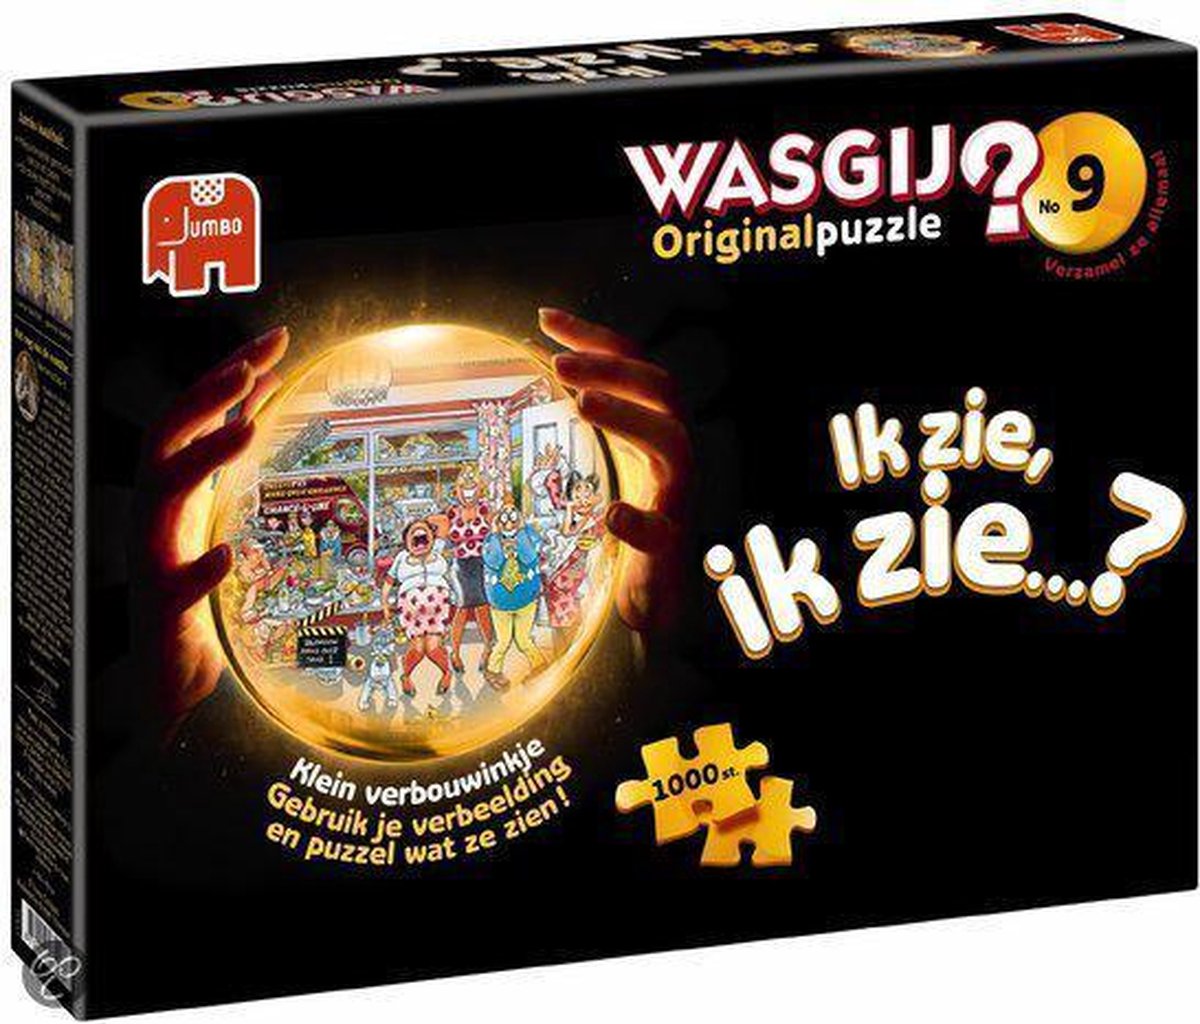 Wasgij Original 9 Klein verbouwinkje puzzel - 1000 stukjes | bol.com